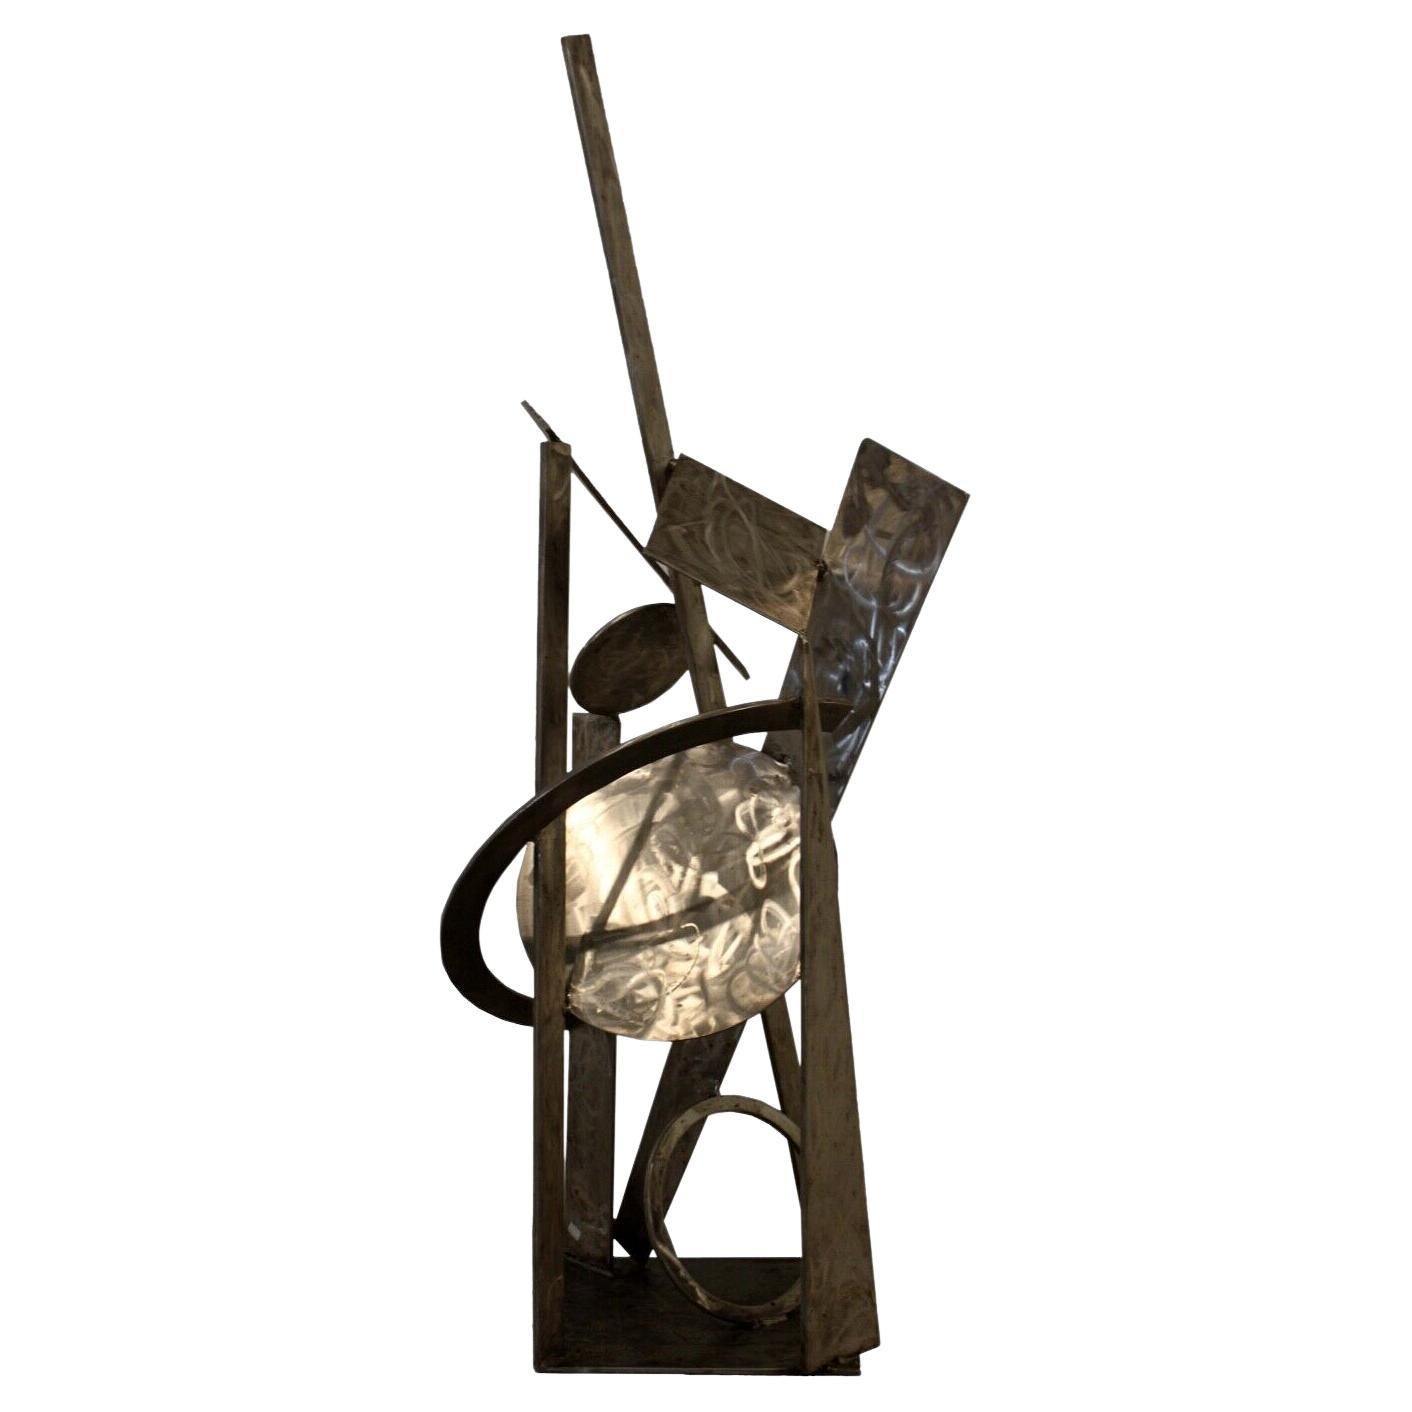 Sculpture abstraite contemporaine en acier inoxydable de Robert Hansen